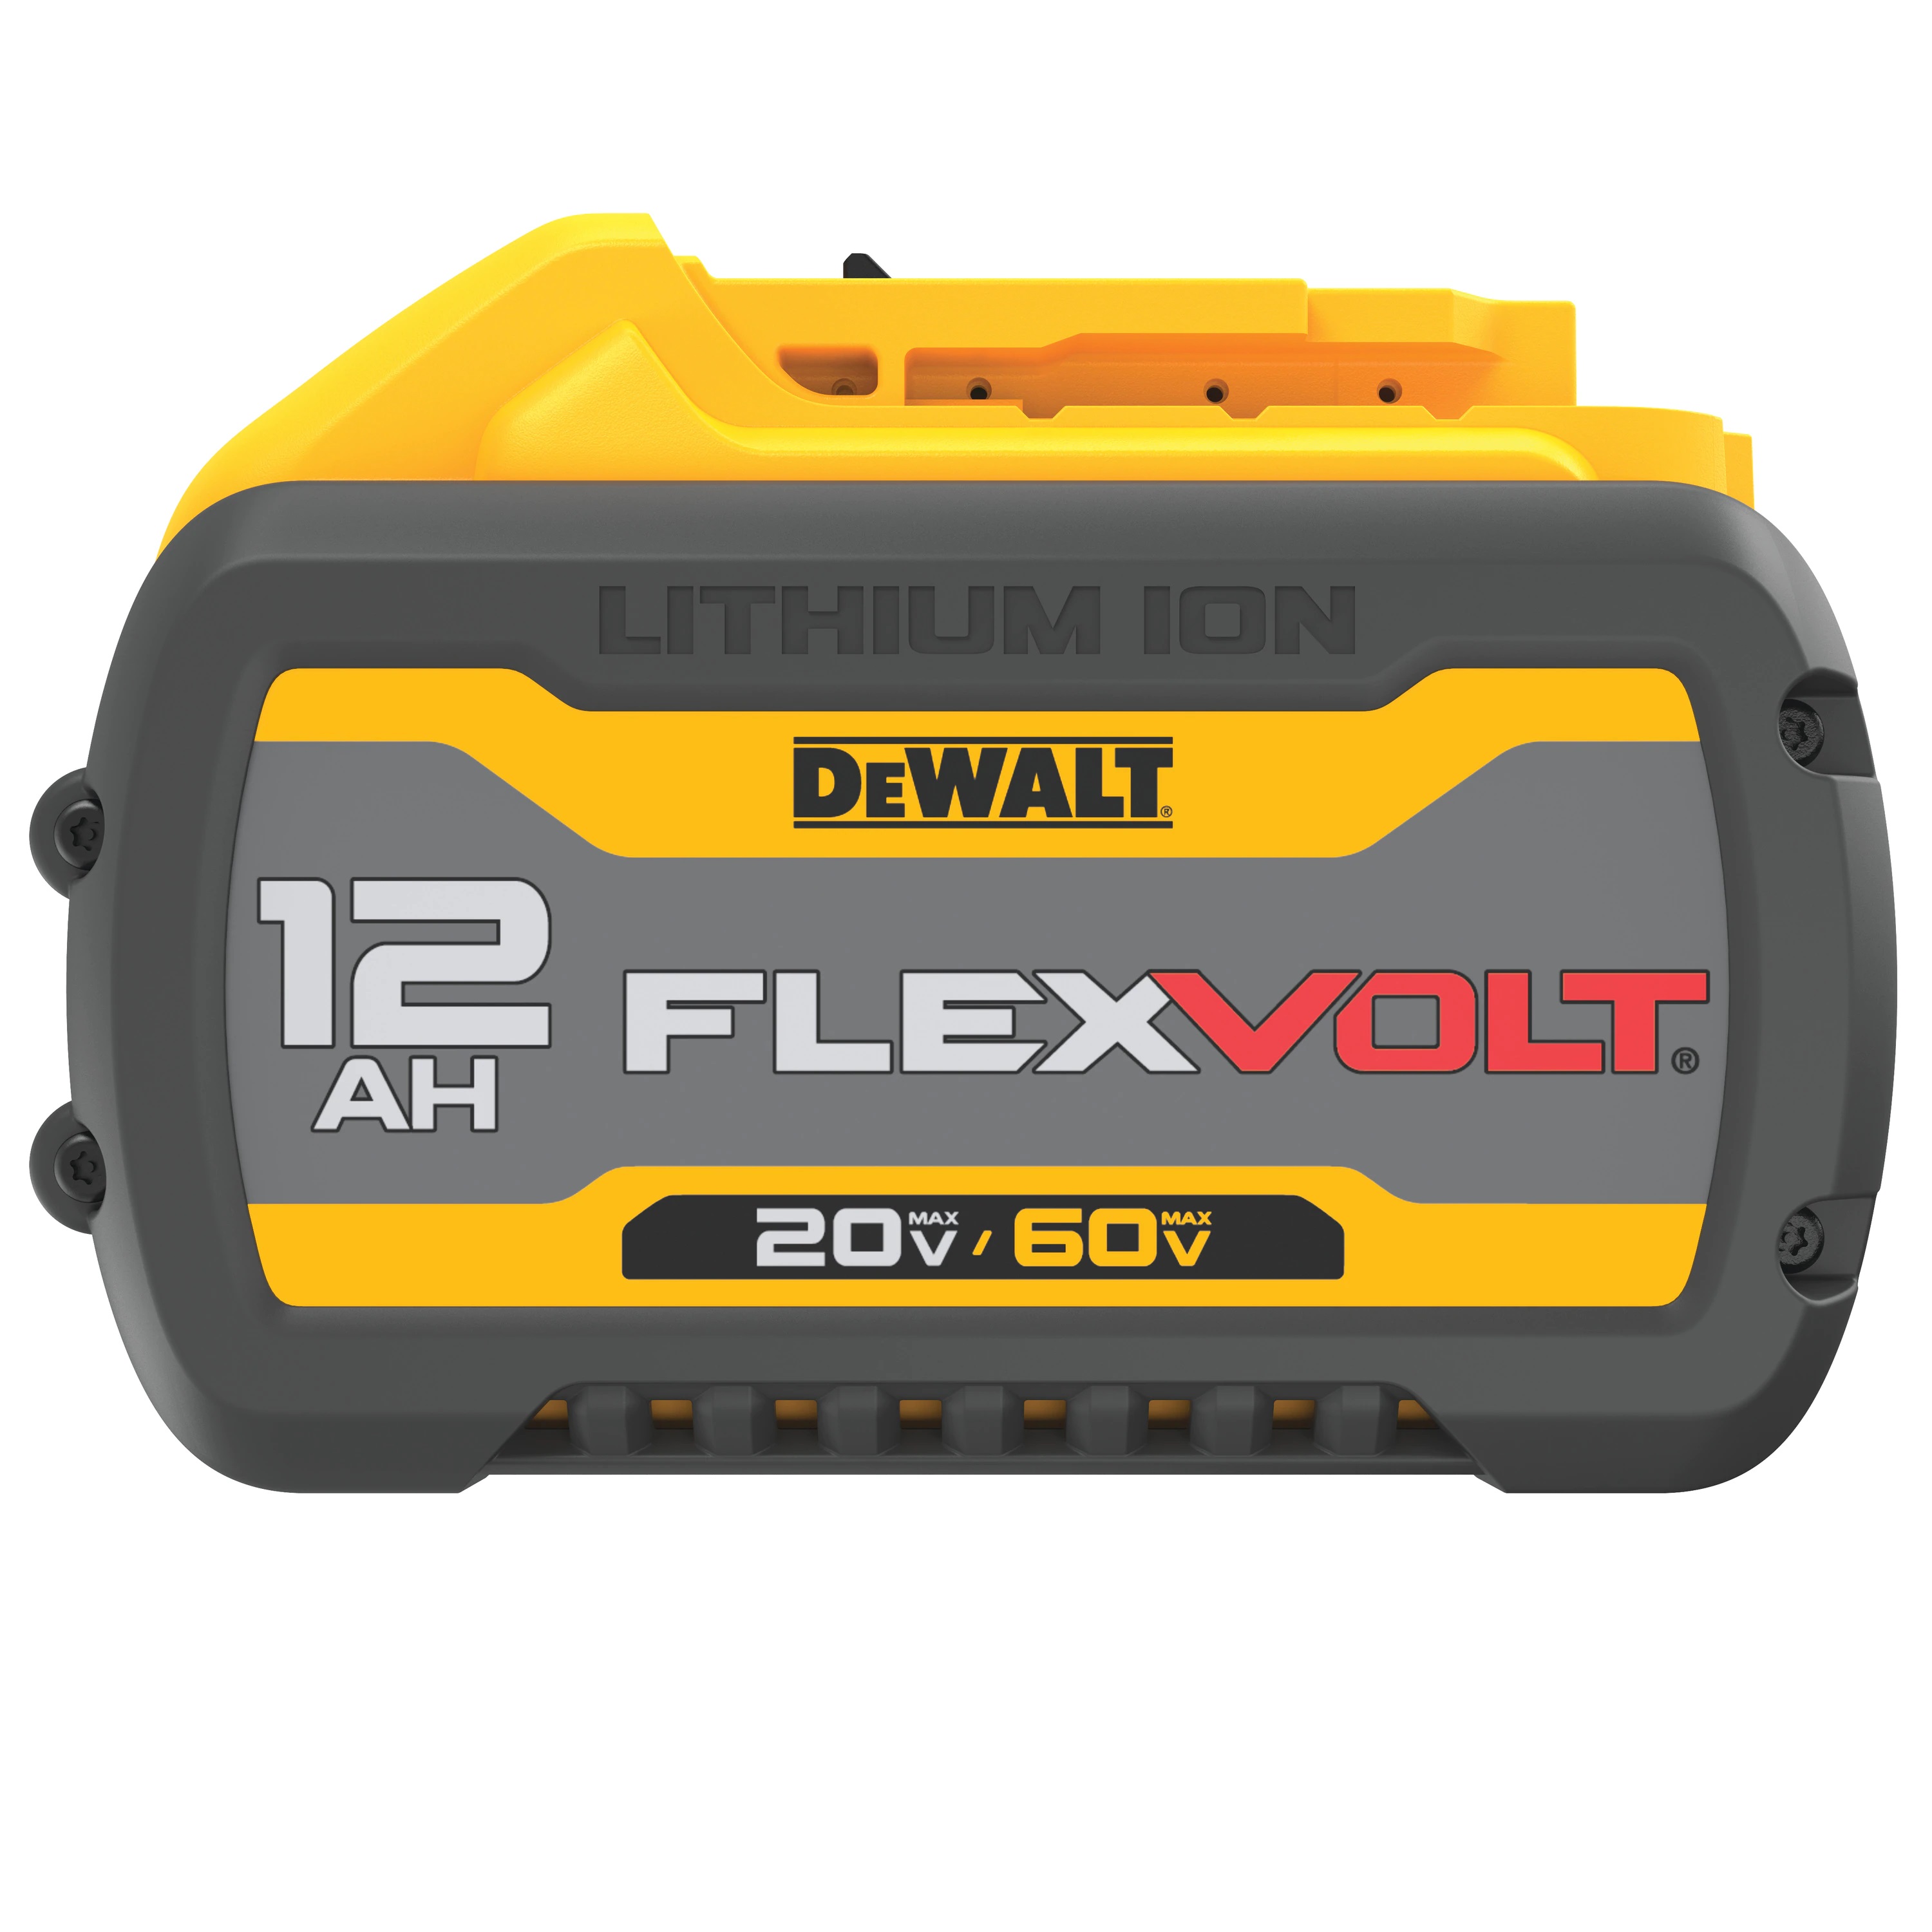 Battery - FLEXVOLT® 20V/60V MAX* 12.0 AH**